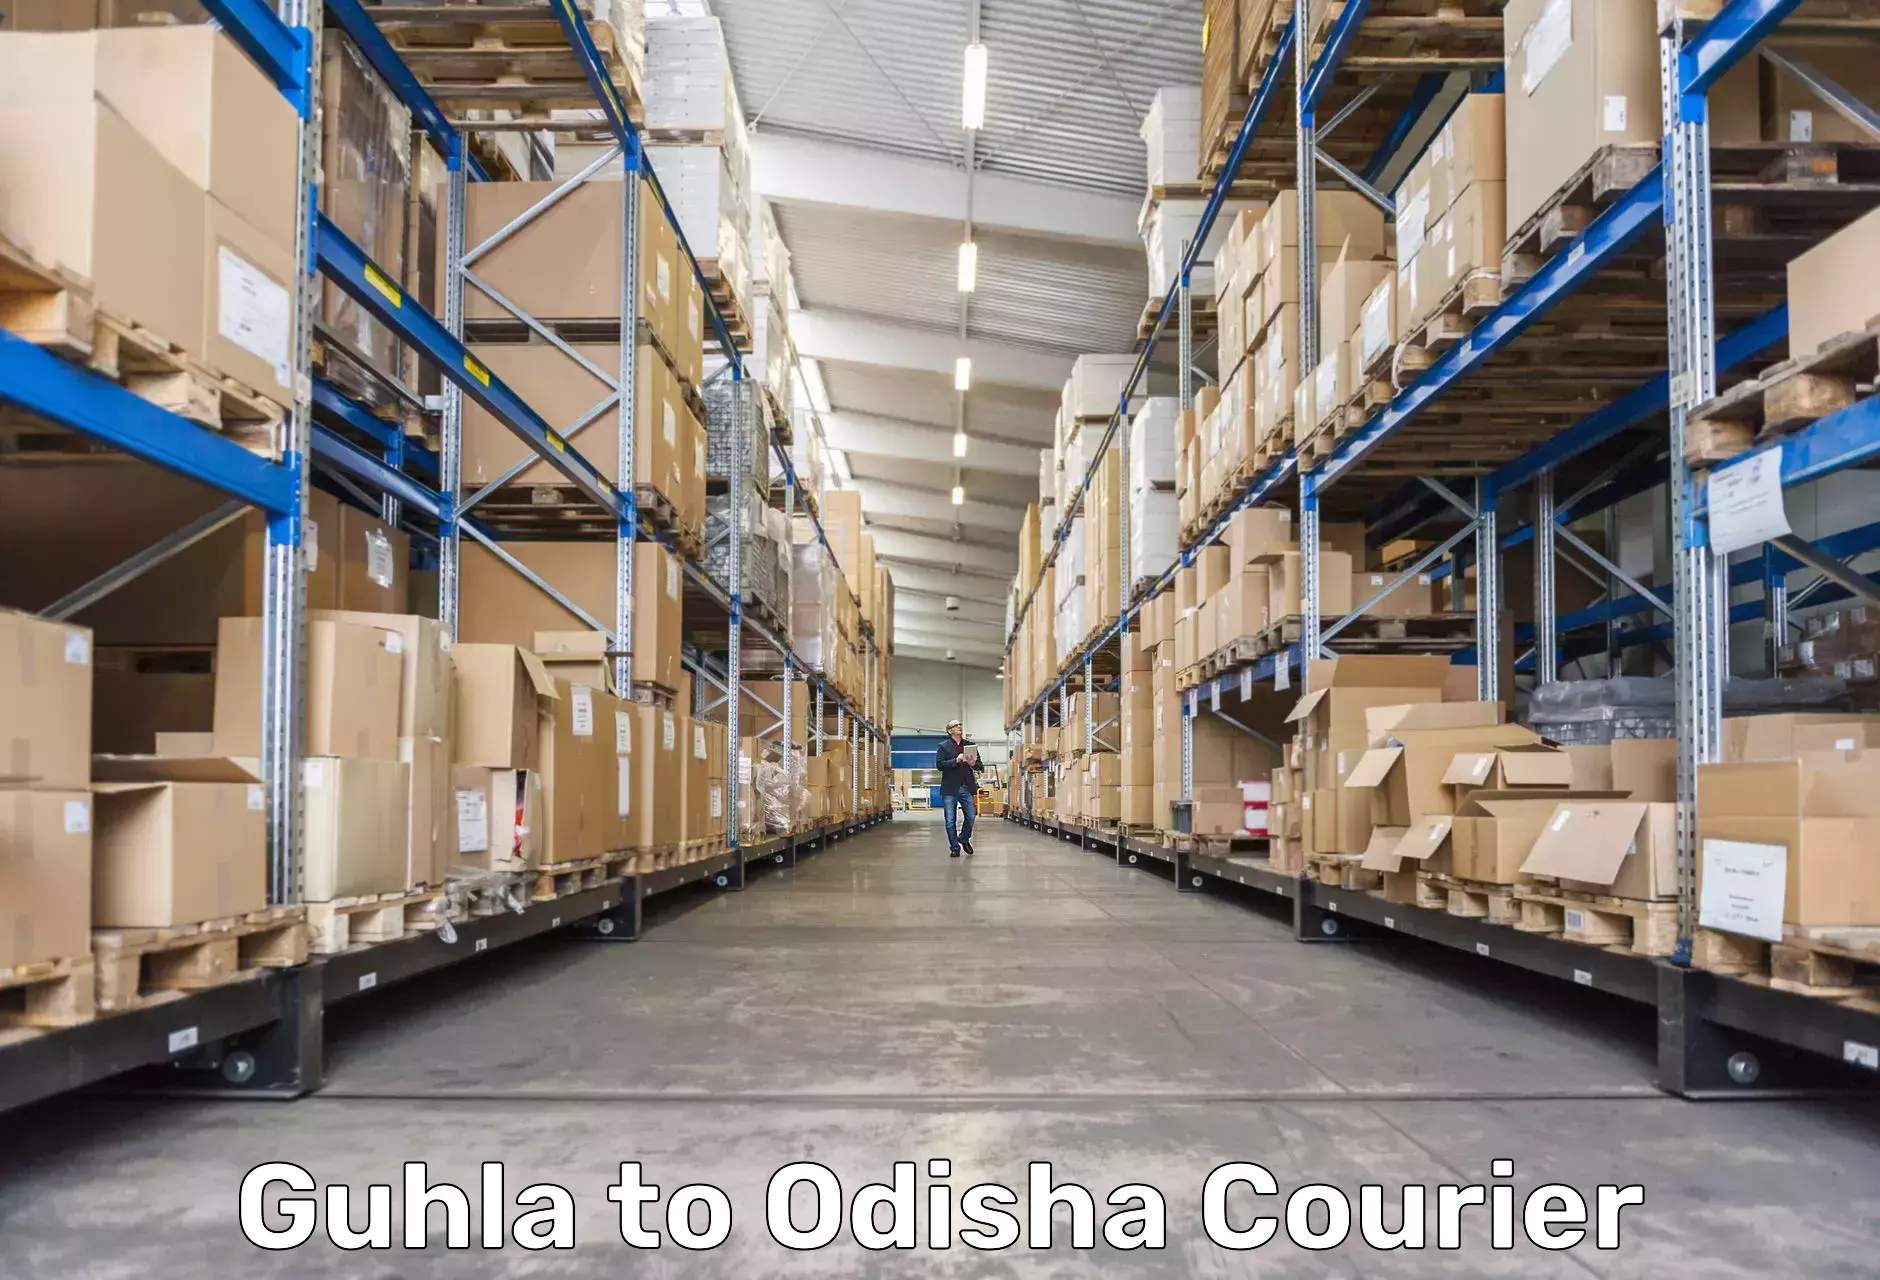 Courier insurance in Guhla to Konark